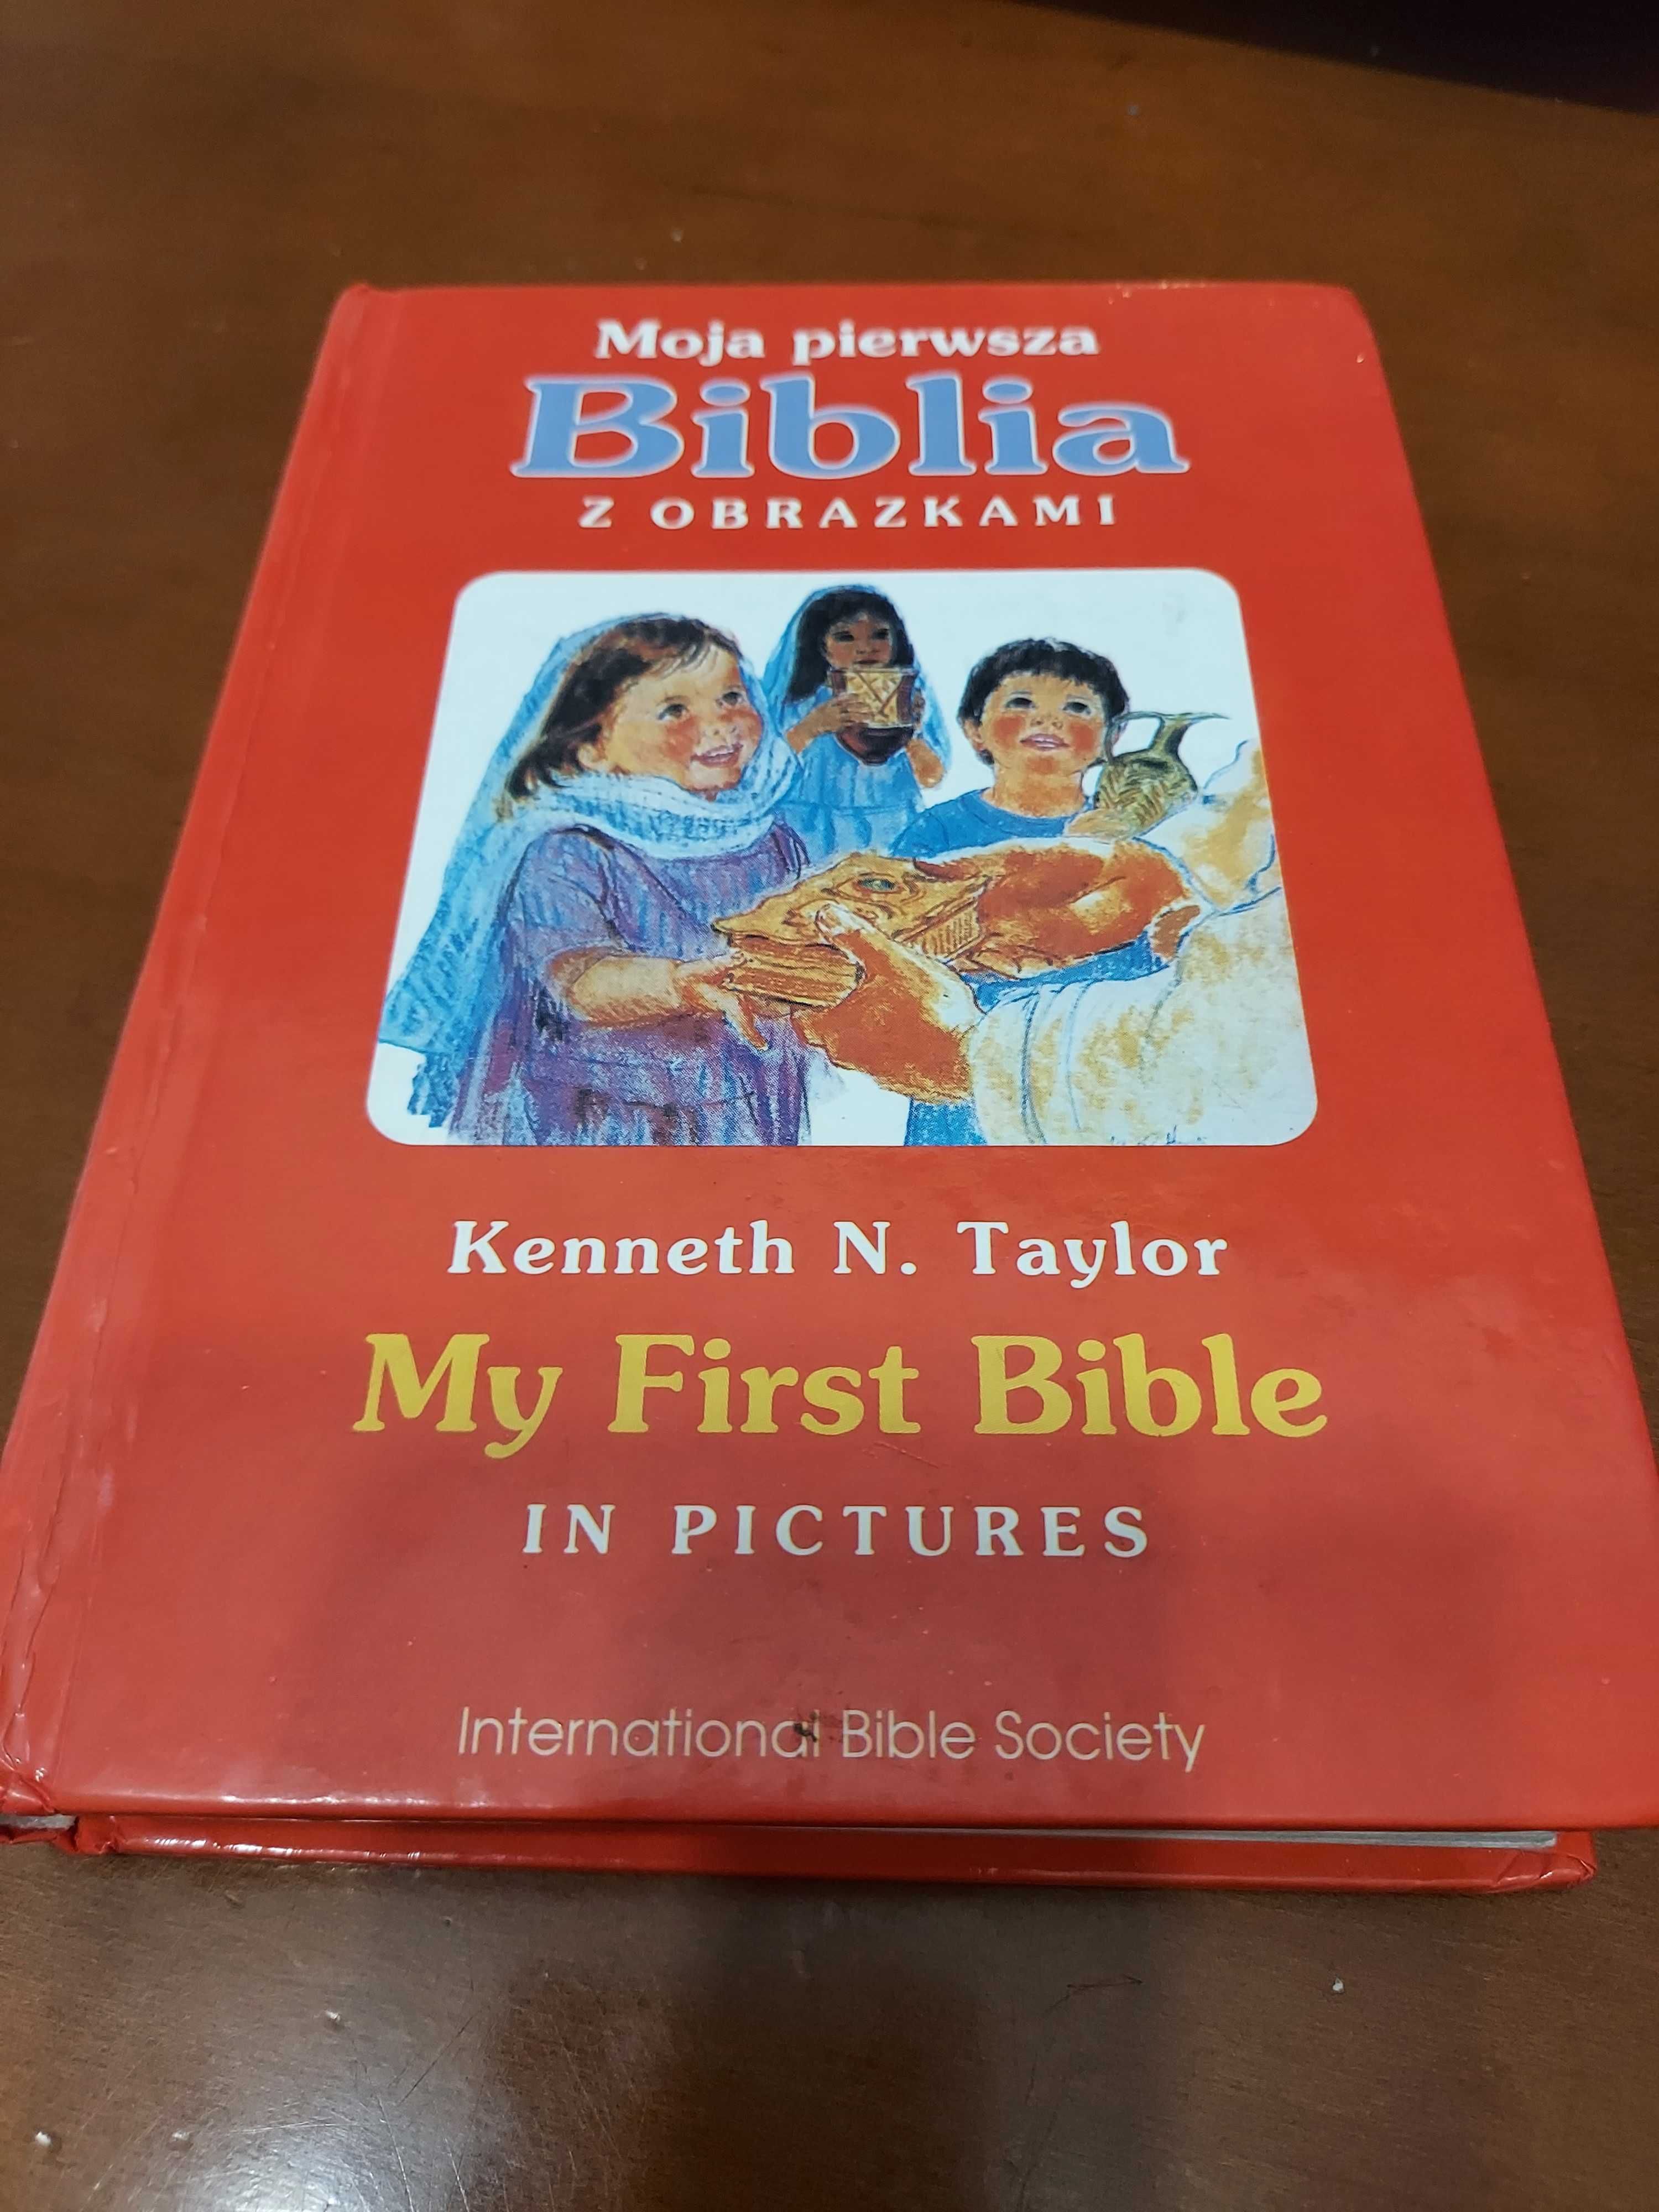 Moja pierwsza Biblia z obrazkami, My First Bible in Pictures